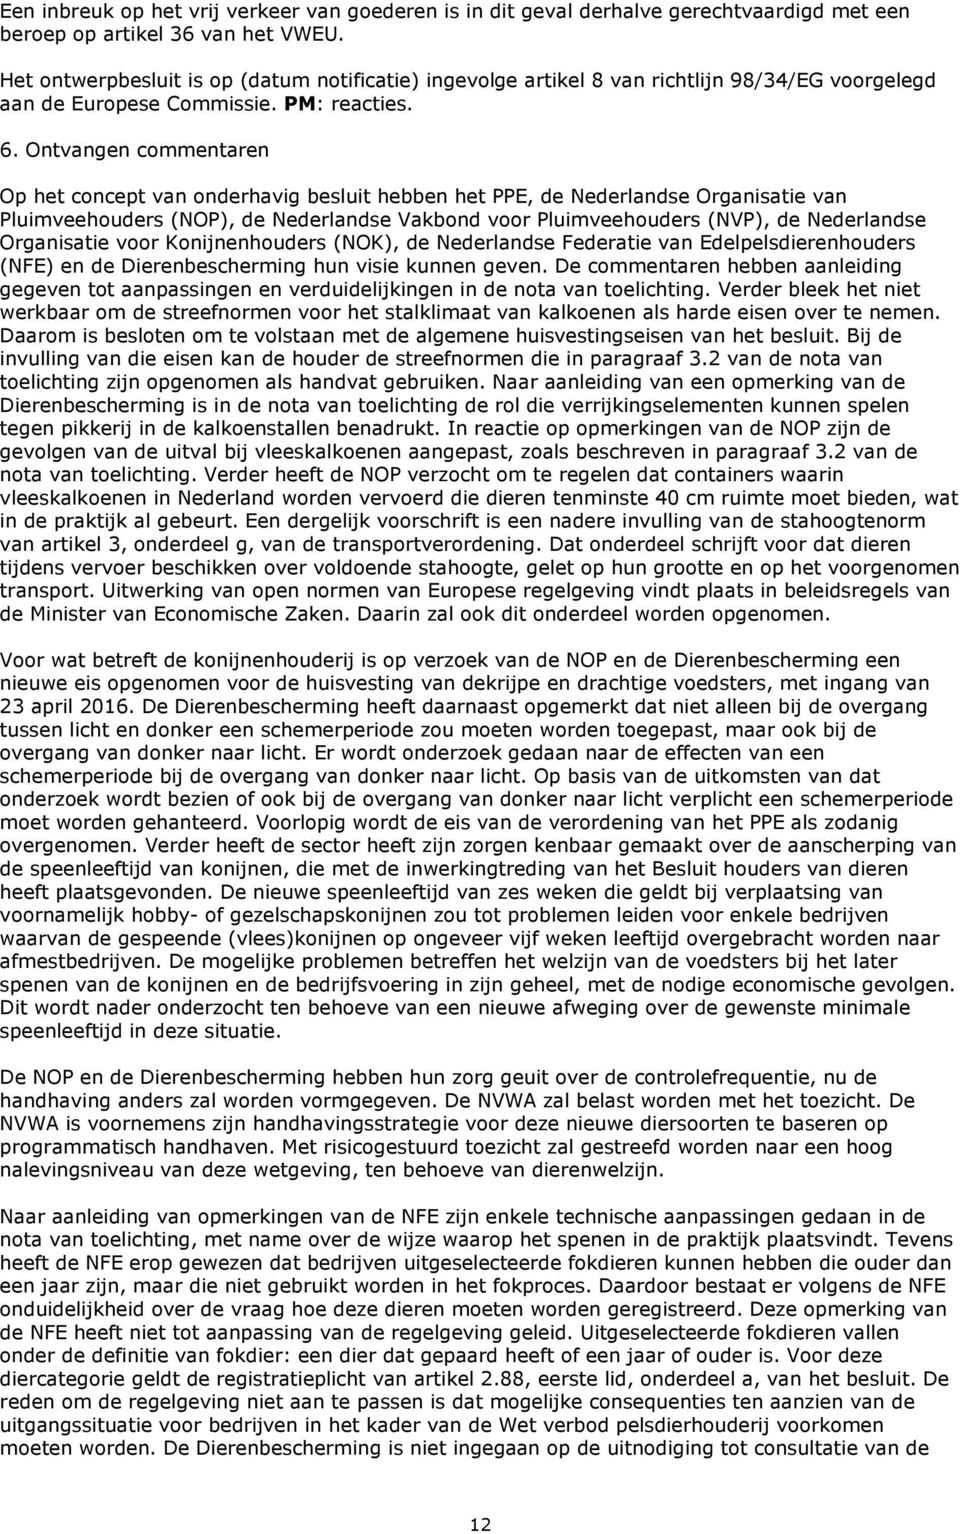 Ontvangen commentaren Op het concept van onderhavig besluit hebben het PPE, de Nederlandse Organisatie van Pluimveehouders (NOP), de Nederlandse Vakbond voor Pluimveehouders (NVP), de Nederlandse